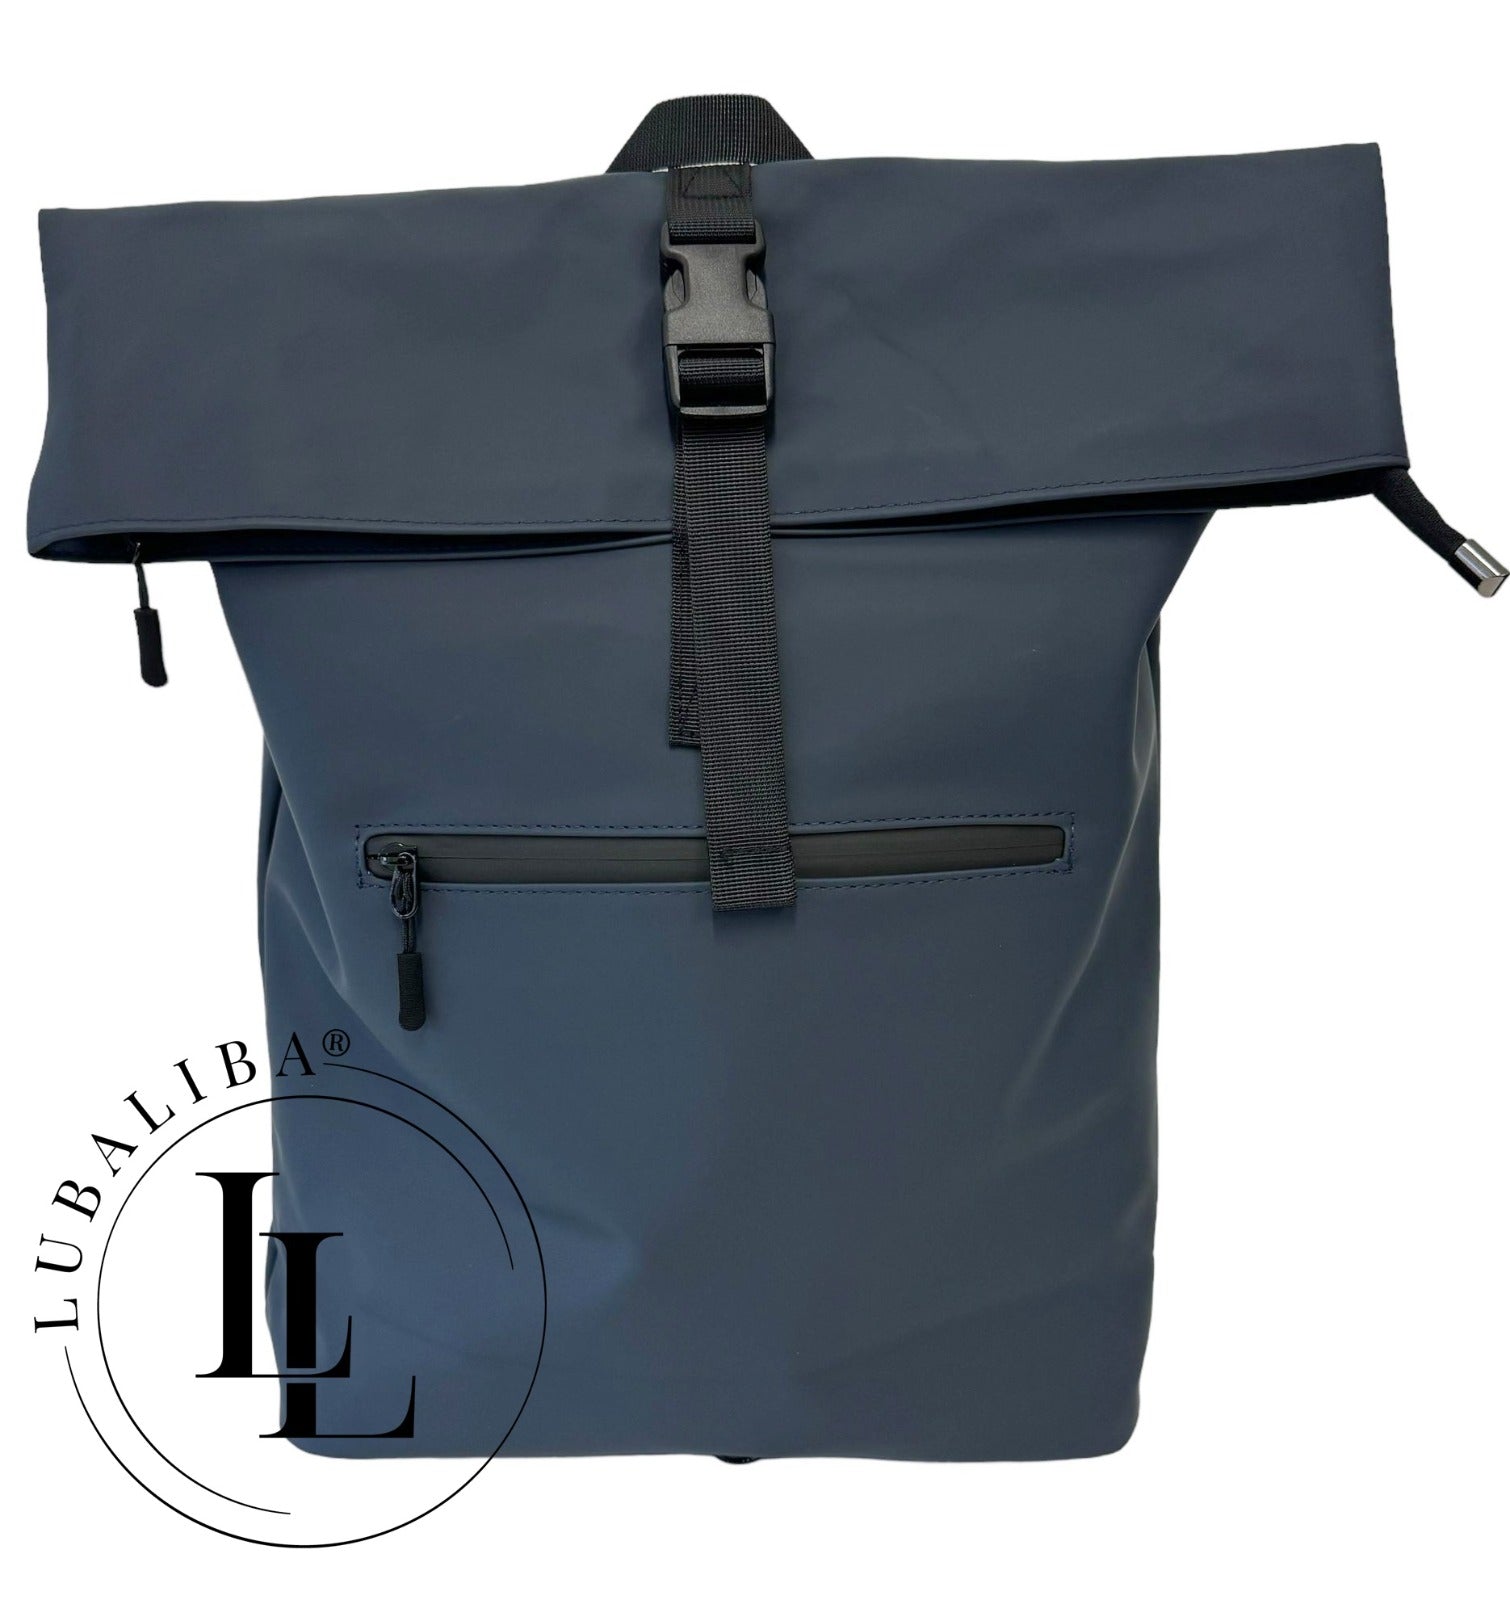 Stylischer Rucksack Daypack Backpack Outdoor X Farben